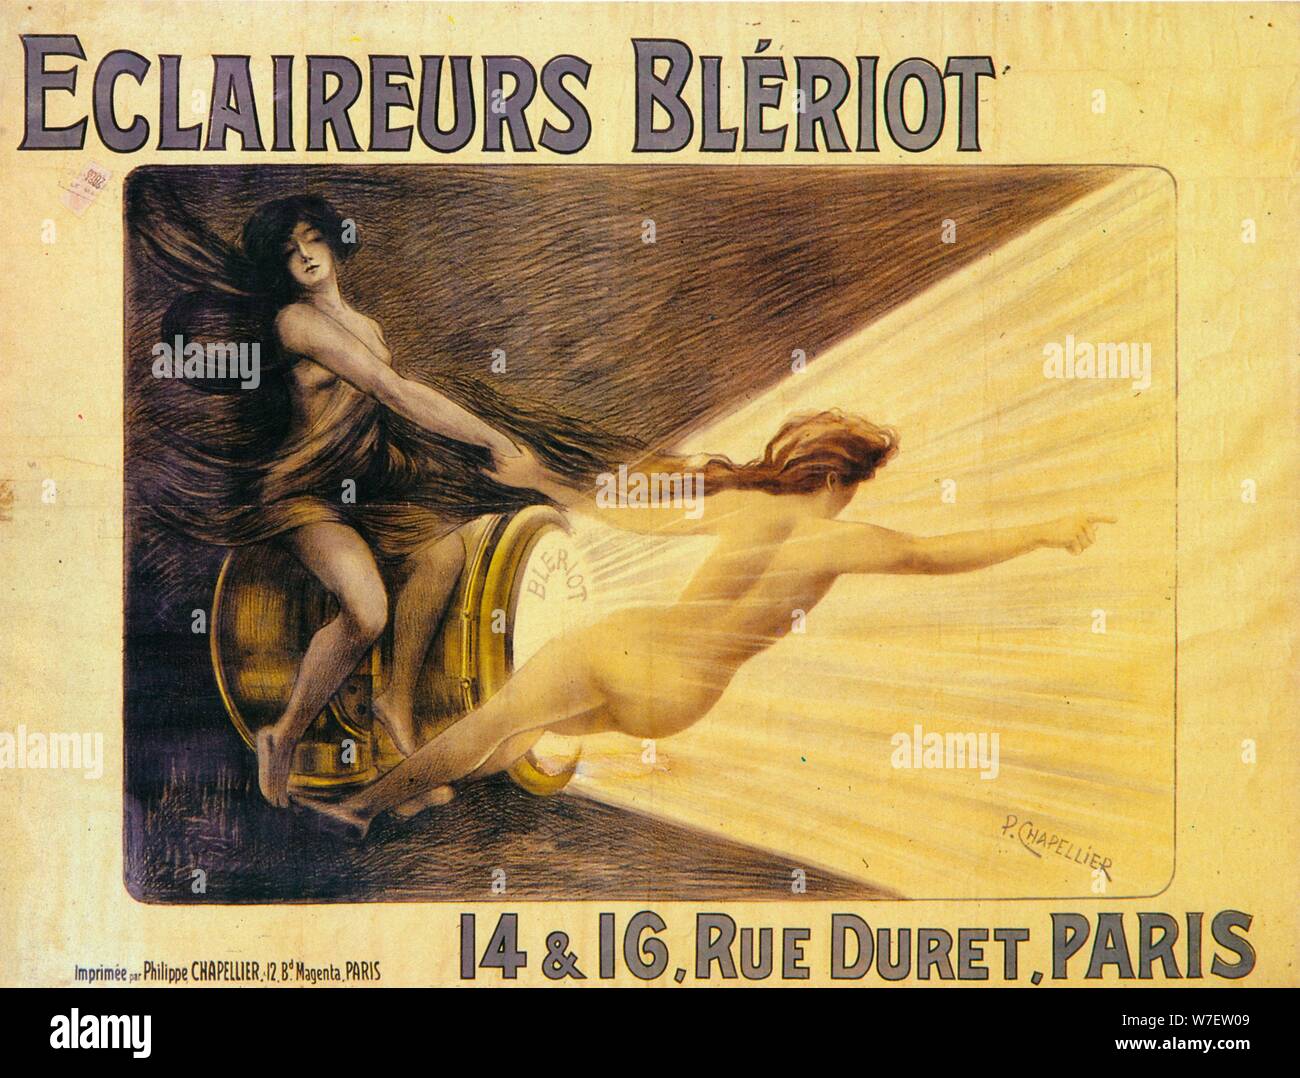 Anuncio de Bleriot faros, c1905. Artista: Philippe Chapellier. Foto de stock